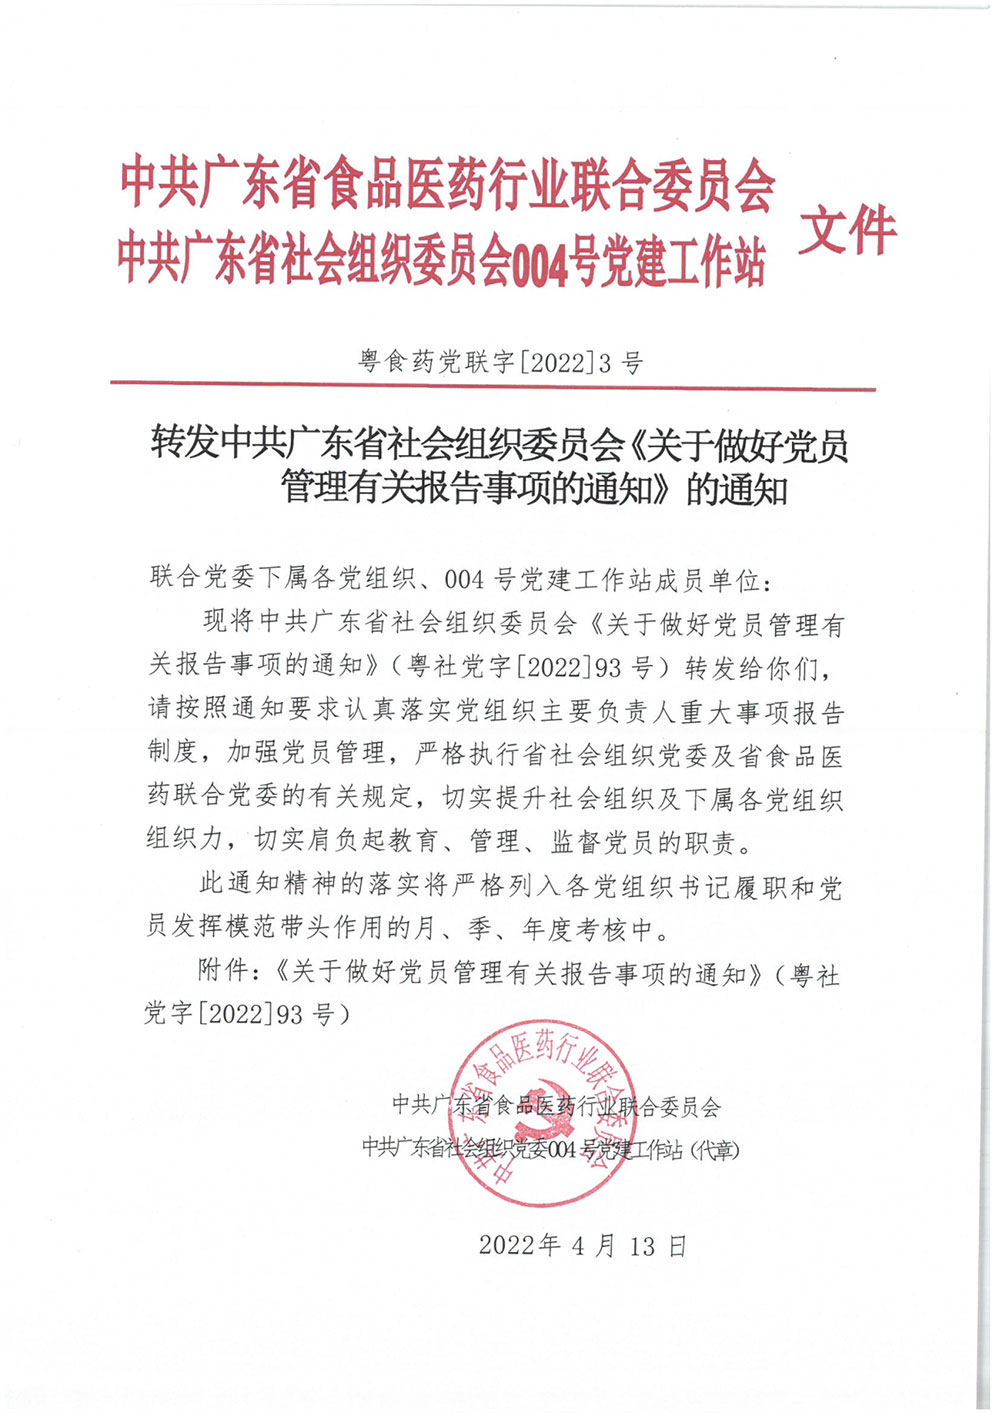 转发中共广东省社会组织委员会《关于做好党员管理有关报告事项的通知》的通知